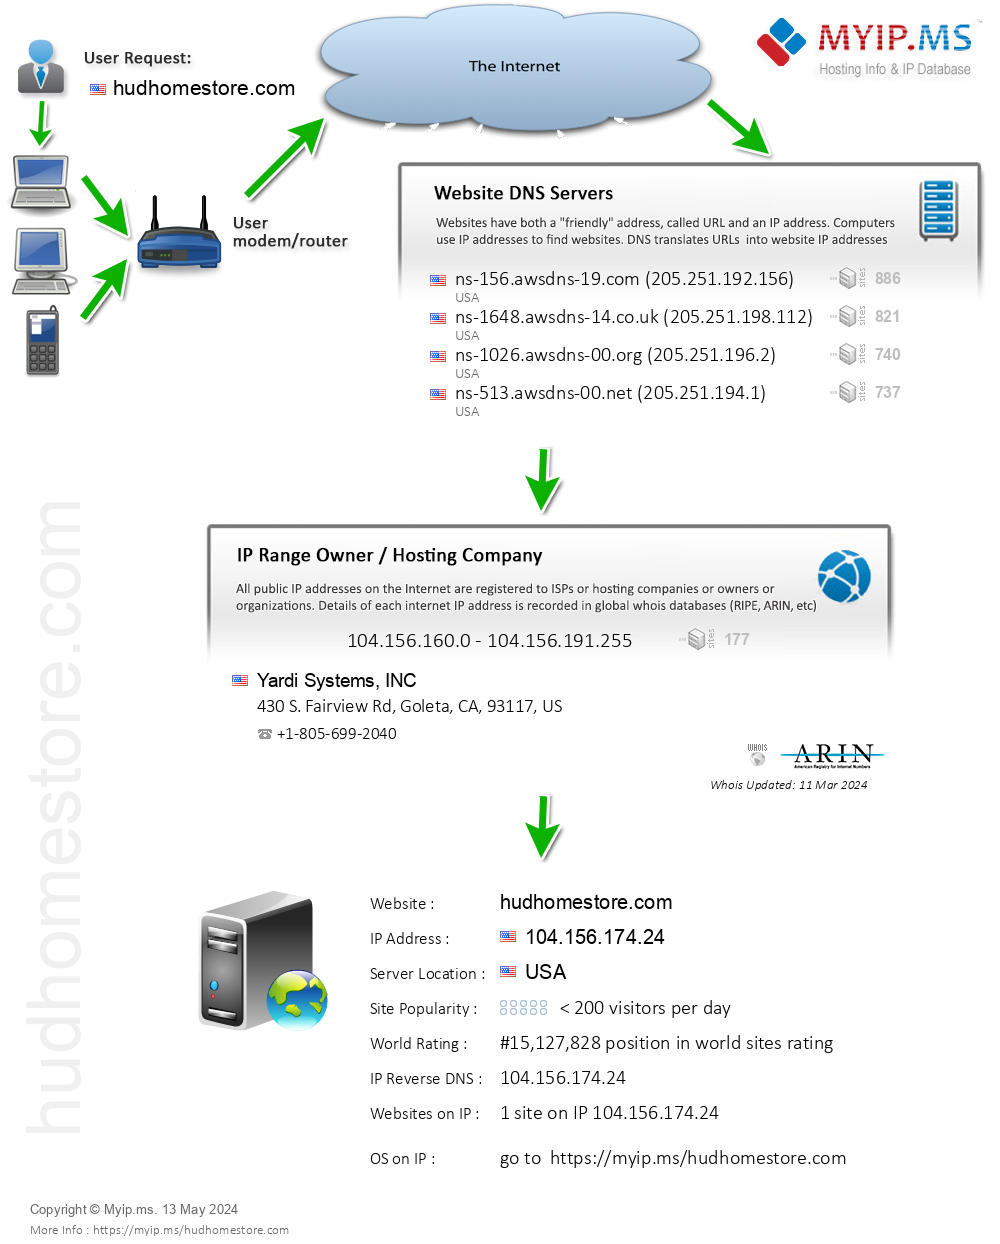 Hudhomestore.com - Website Hosting Visual IP Diagram